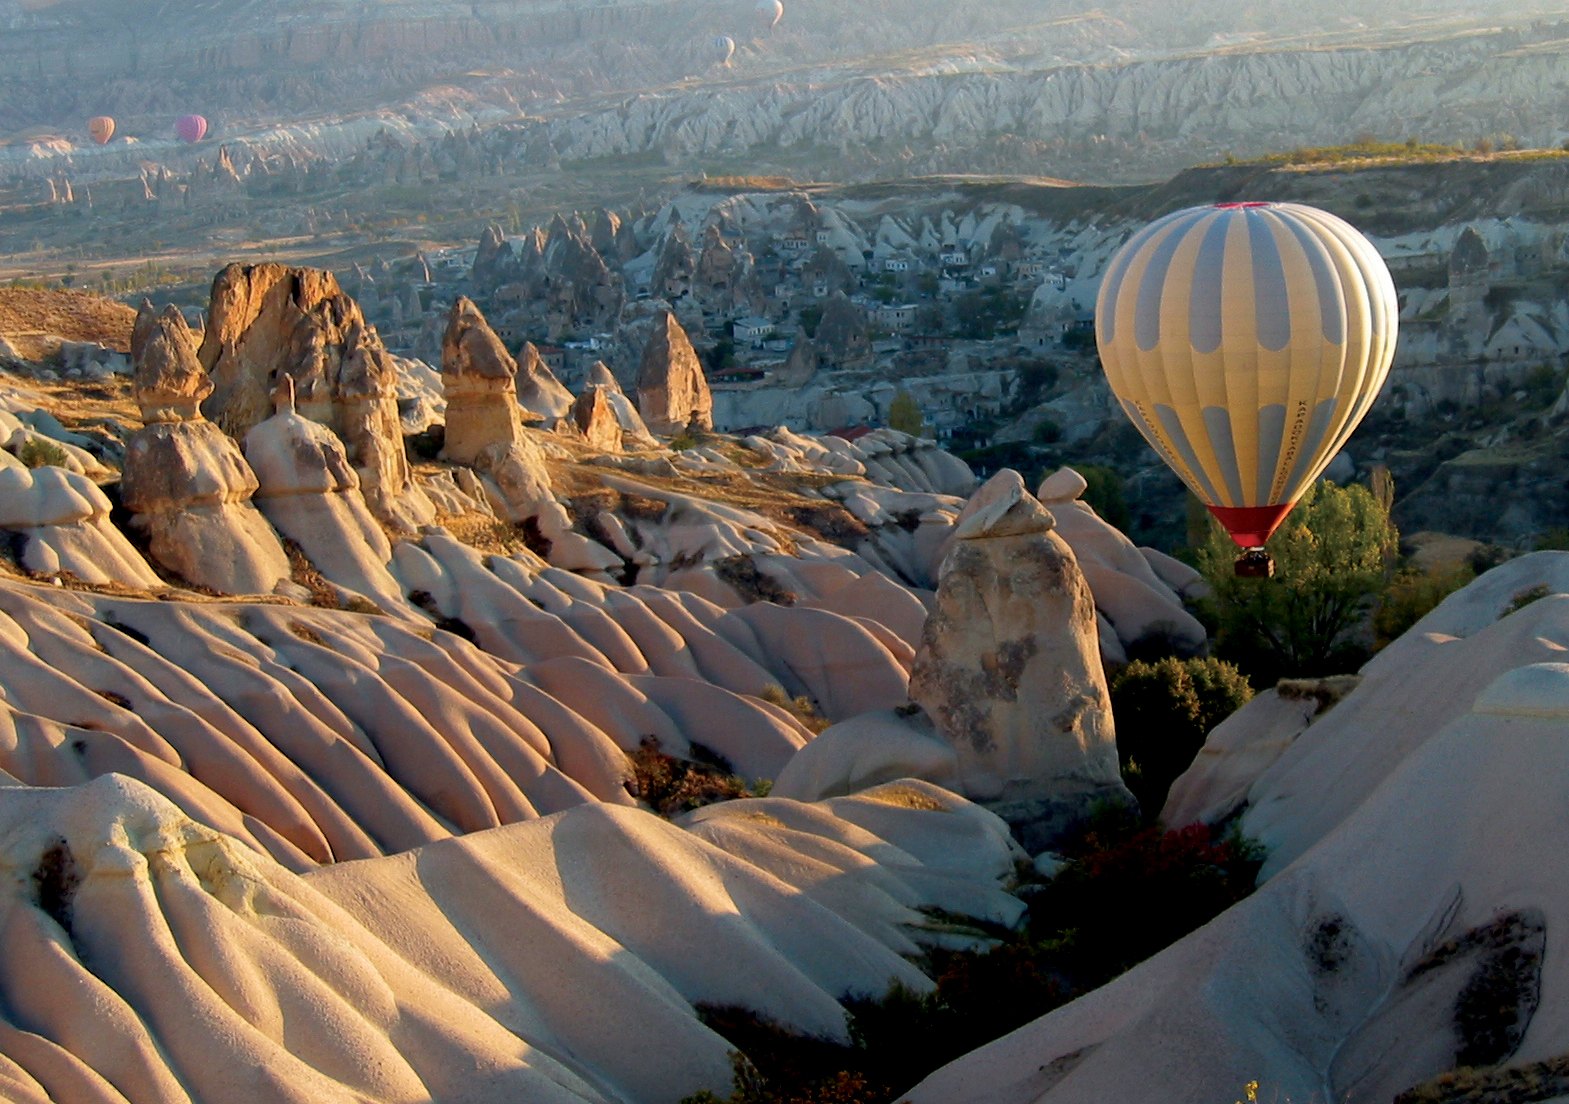 (Turkey)+-+Cappadocia+-+Land+of+fairy+chimneys+1.jpg